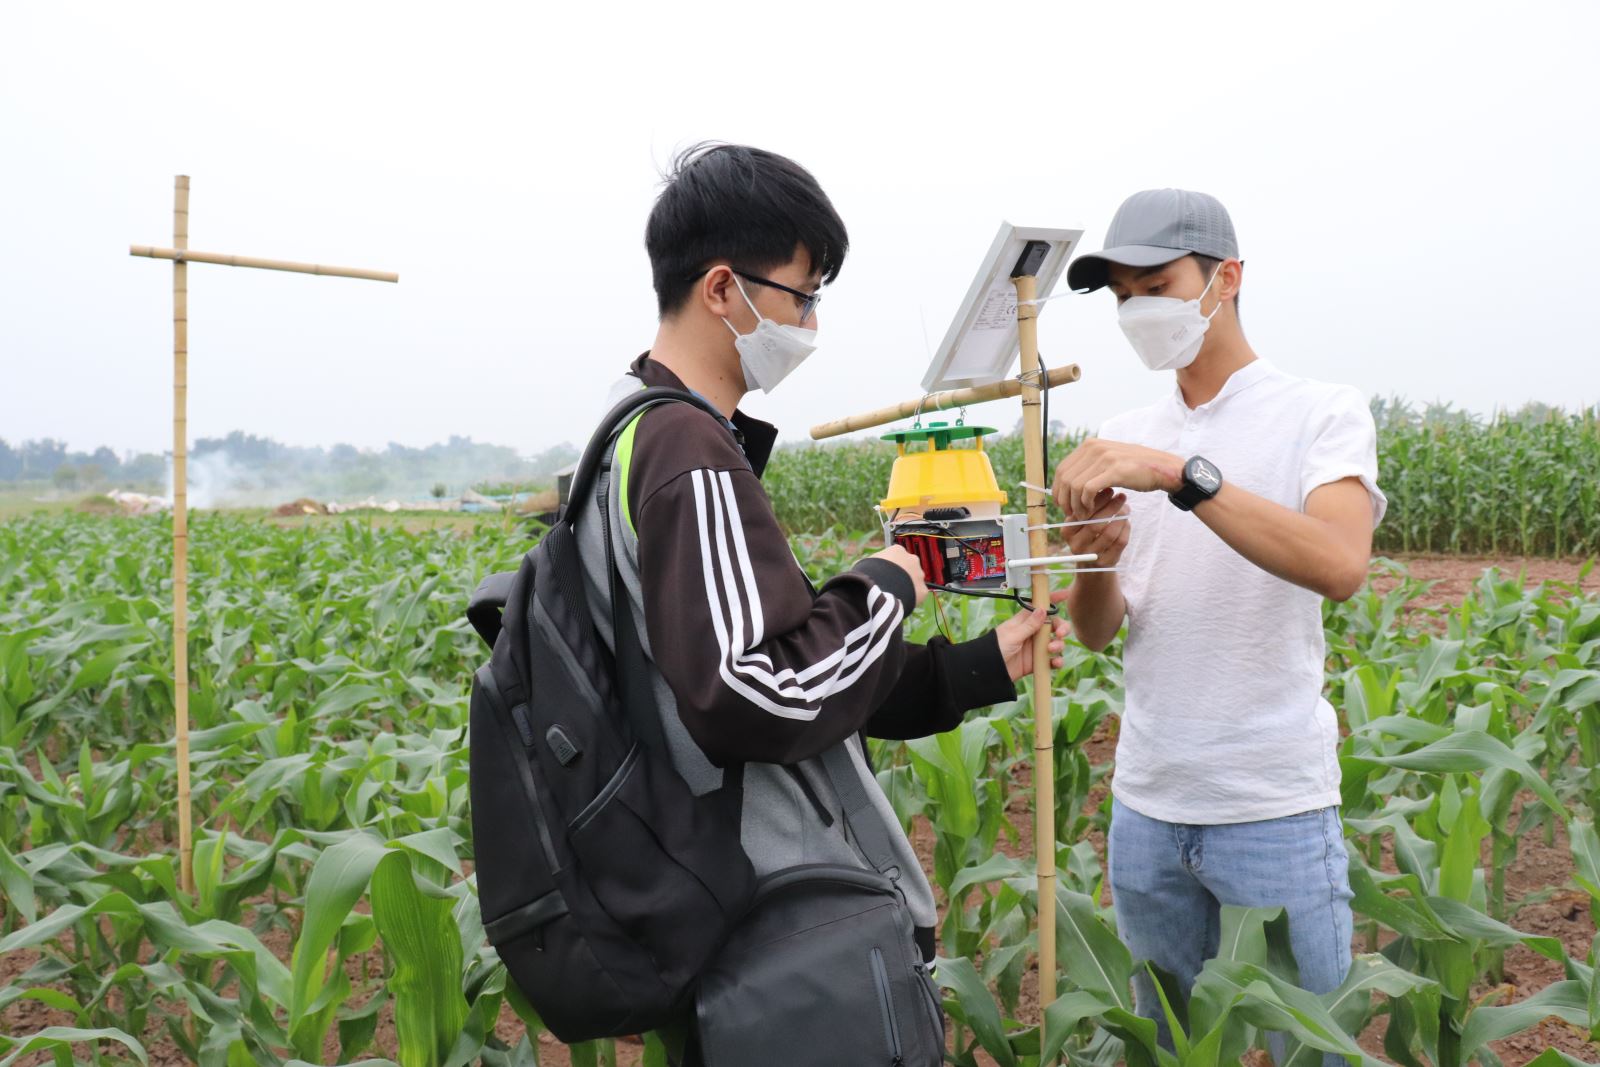 Lắp đặt hệ thống bẫy sâu keo mùa thu thông minh trên ruộng ngô, sử dụng truyền thông LoRa để truyền tải dữ liệu theo thời gian thực tại Việt Nam